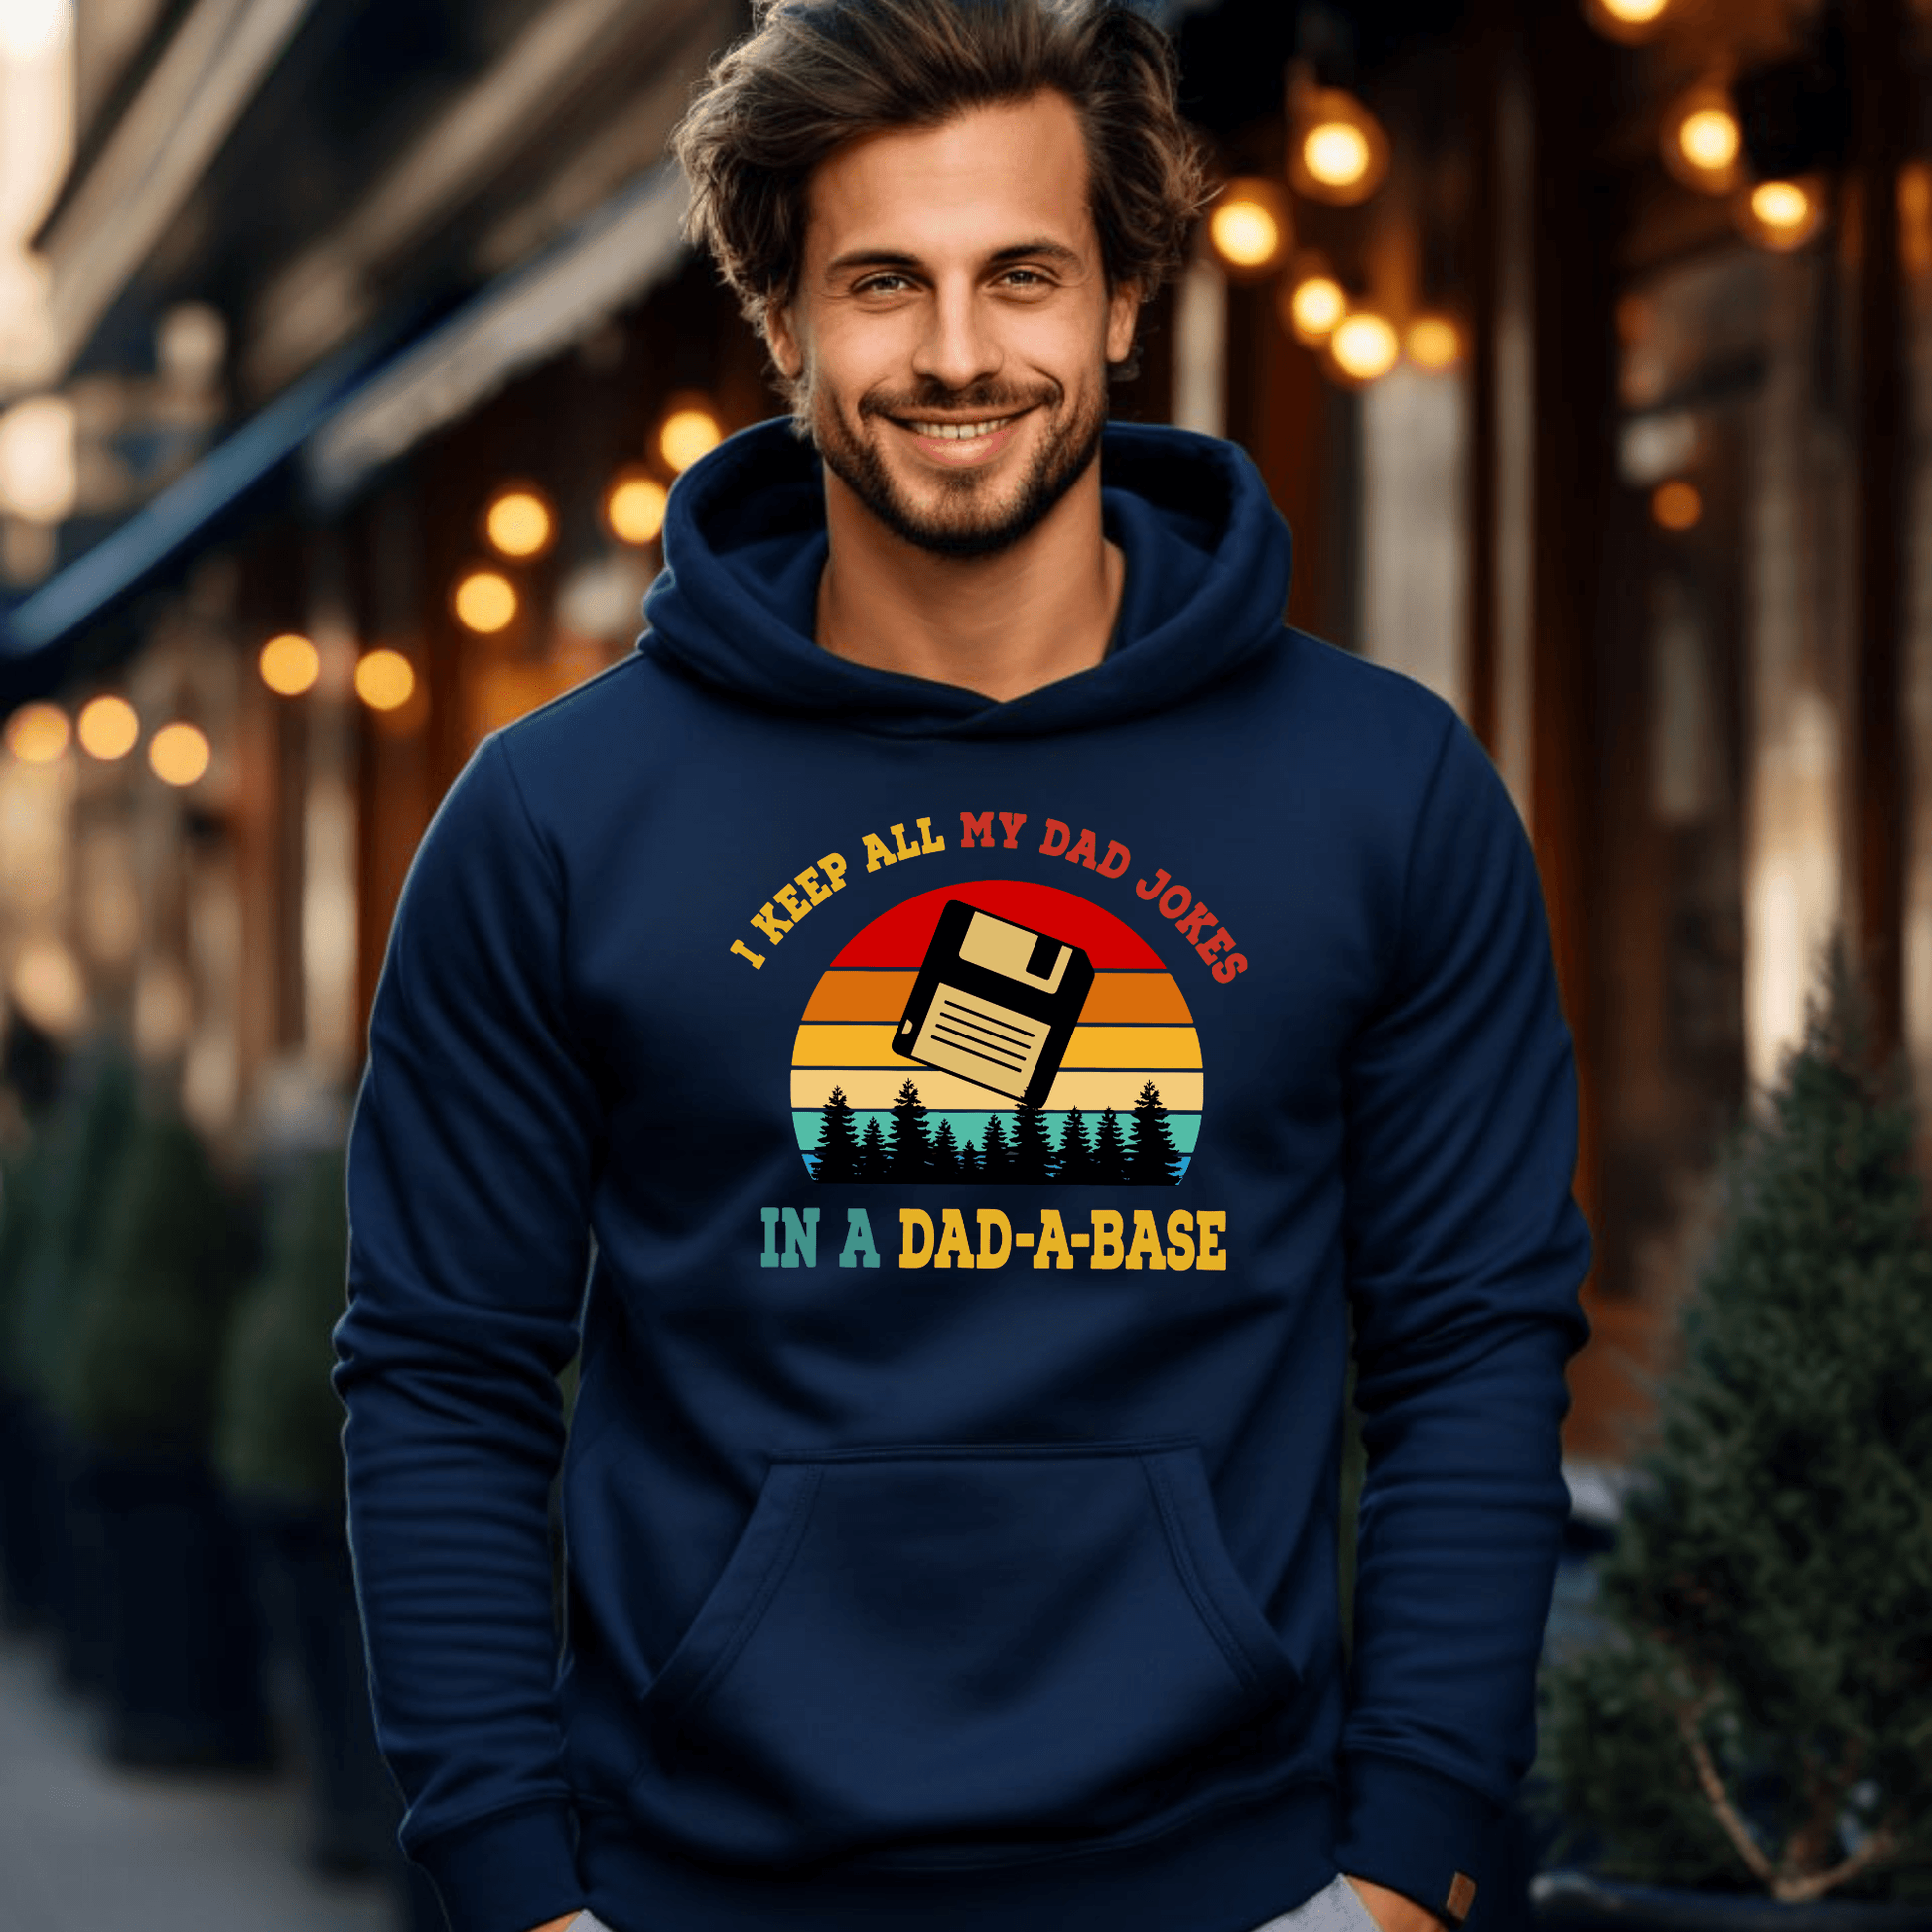 Dad-a-Base Humor Shirt - Das perfekte Geschenk für Väter - GiftHaus